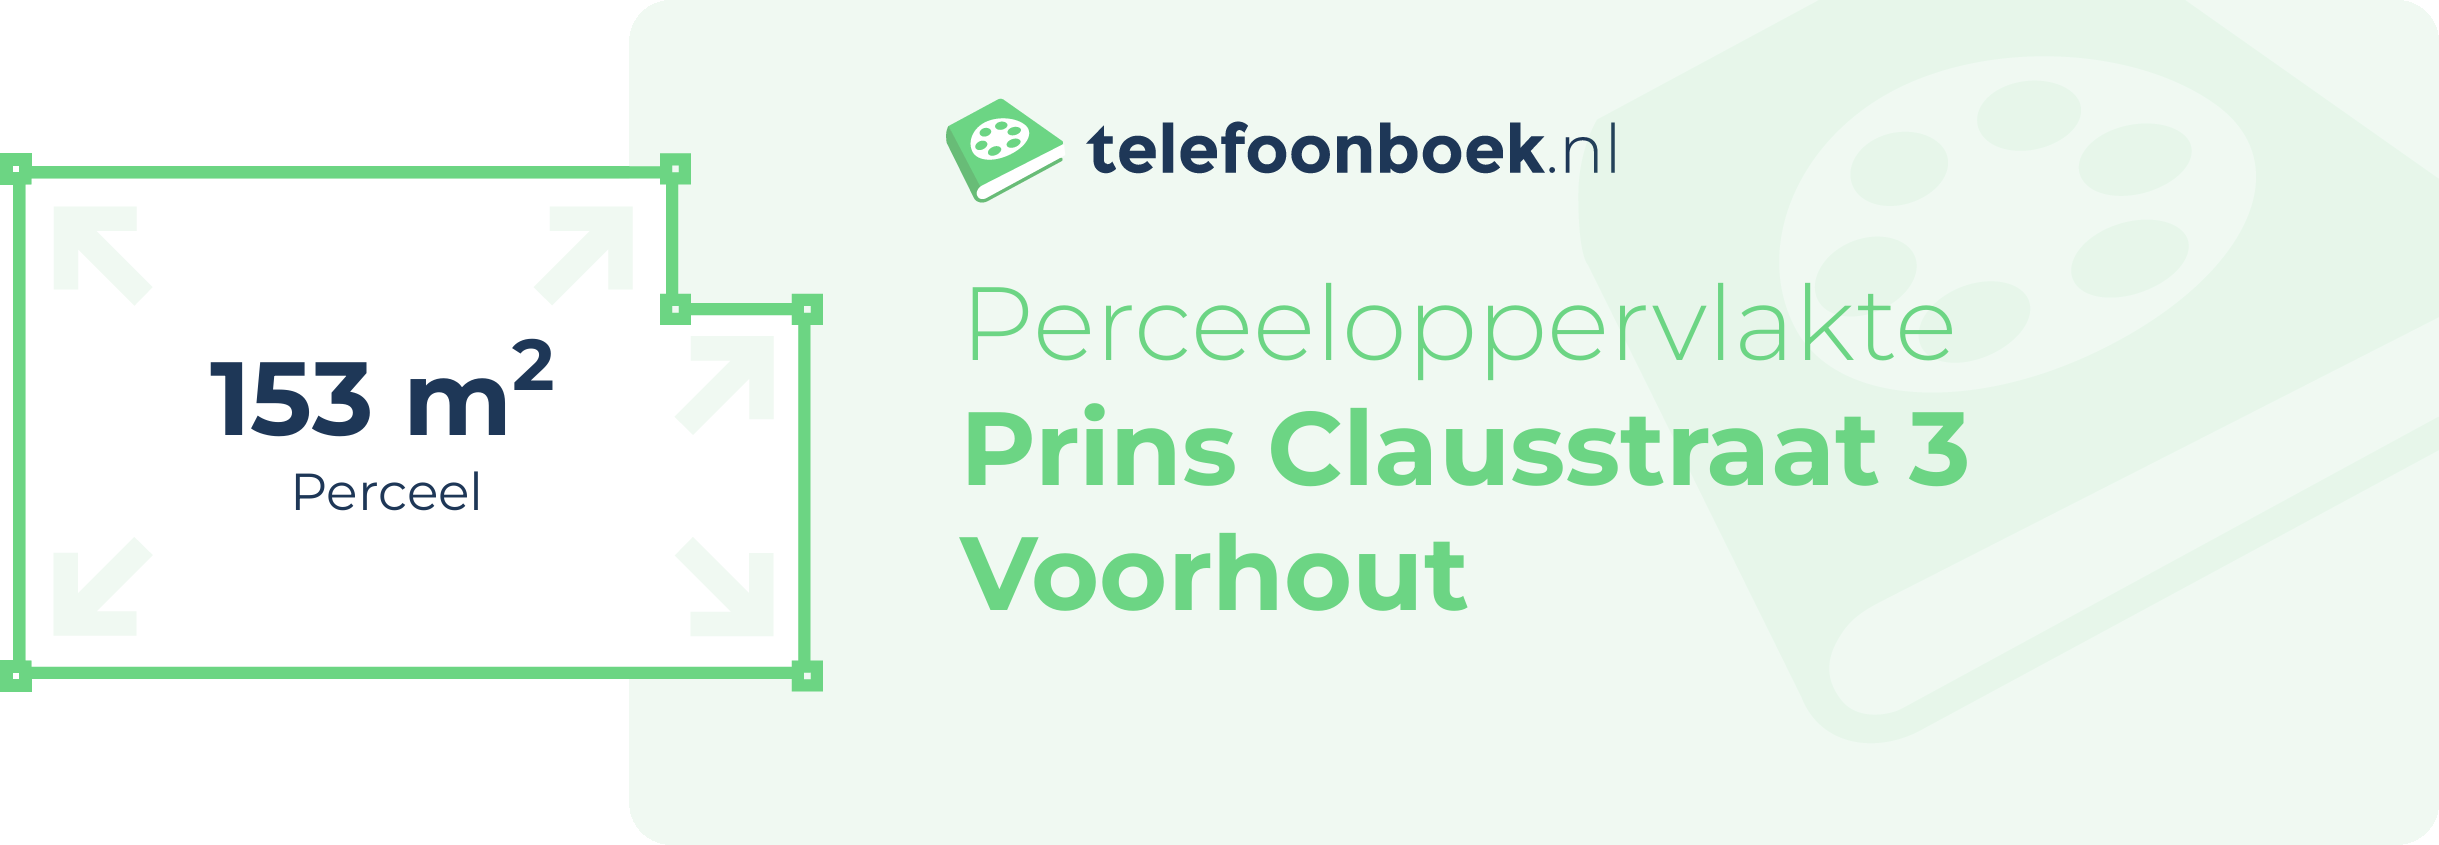 Perceeloppervlakte Prins Clausstraat 3 Voorhout